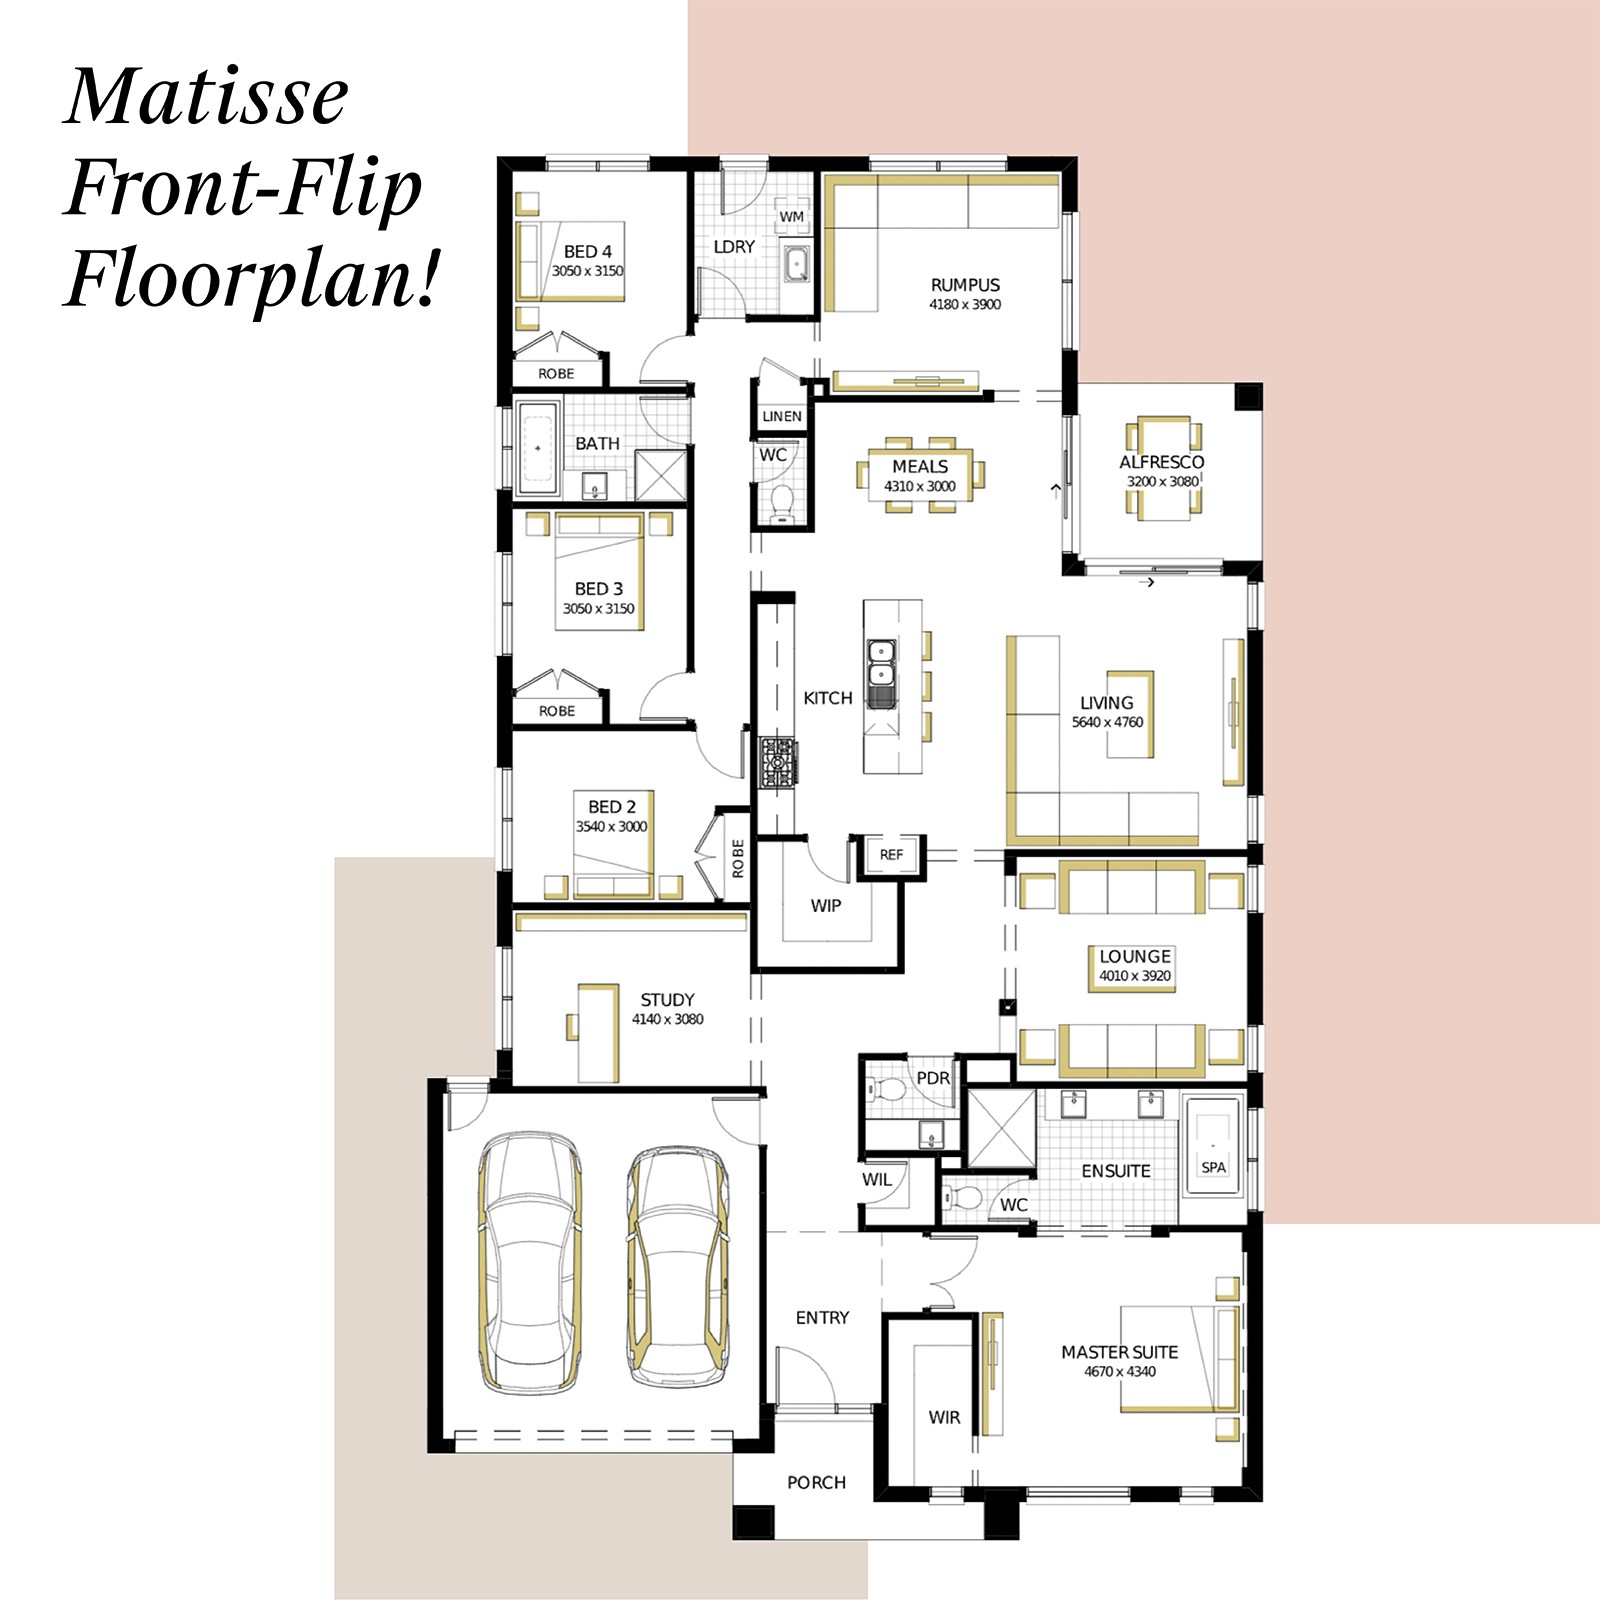 Flip It! Consider Inverting Your Floor Plan